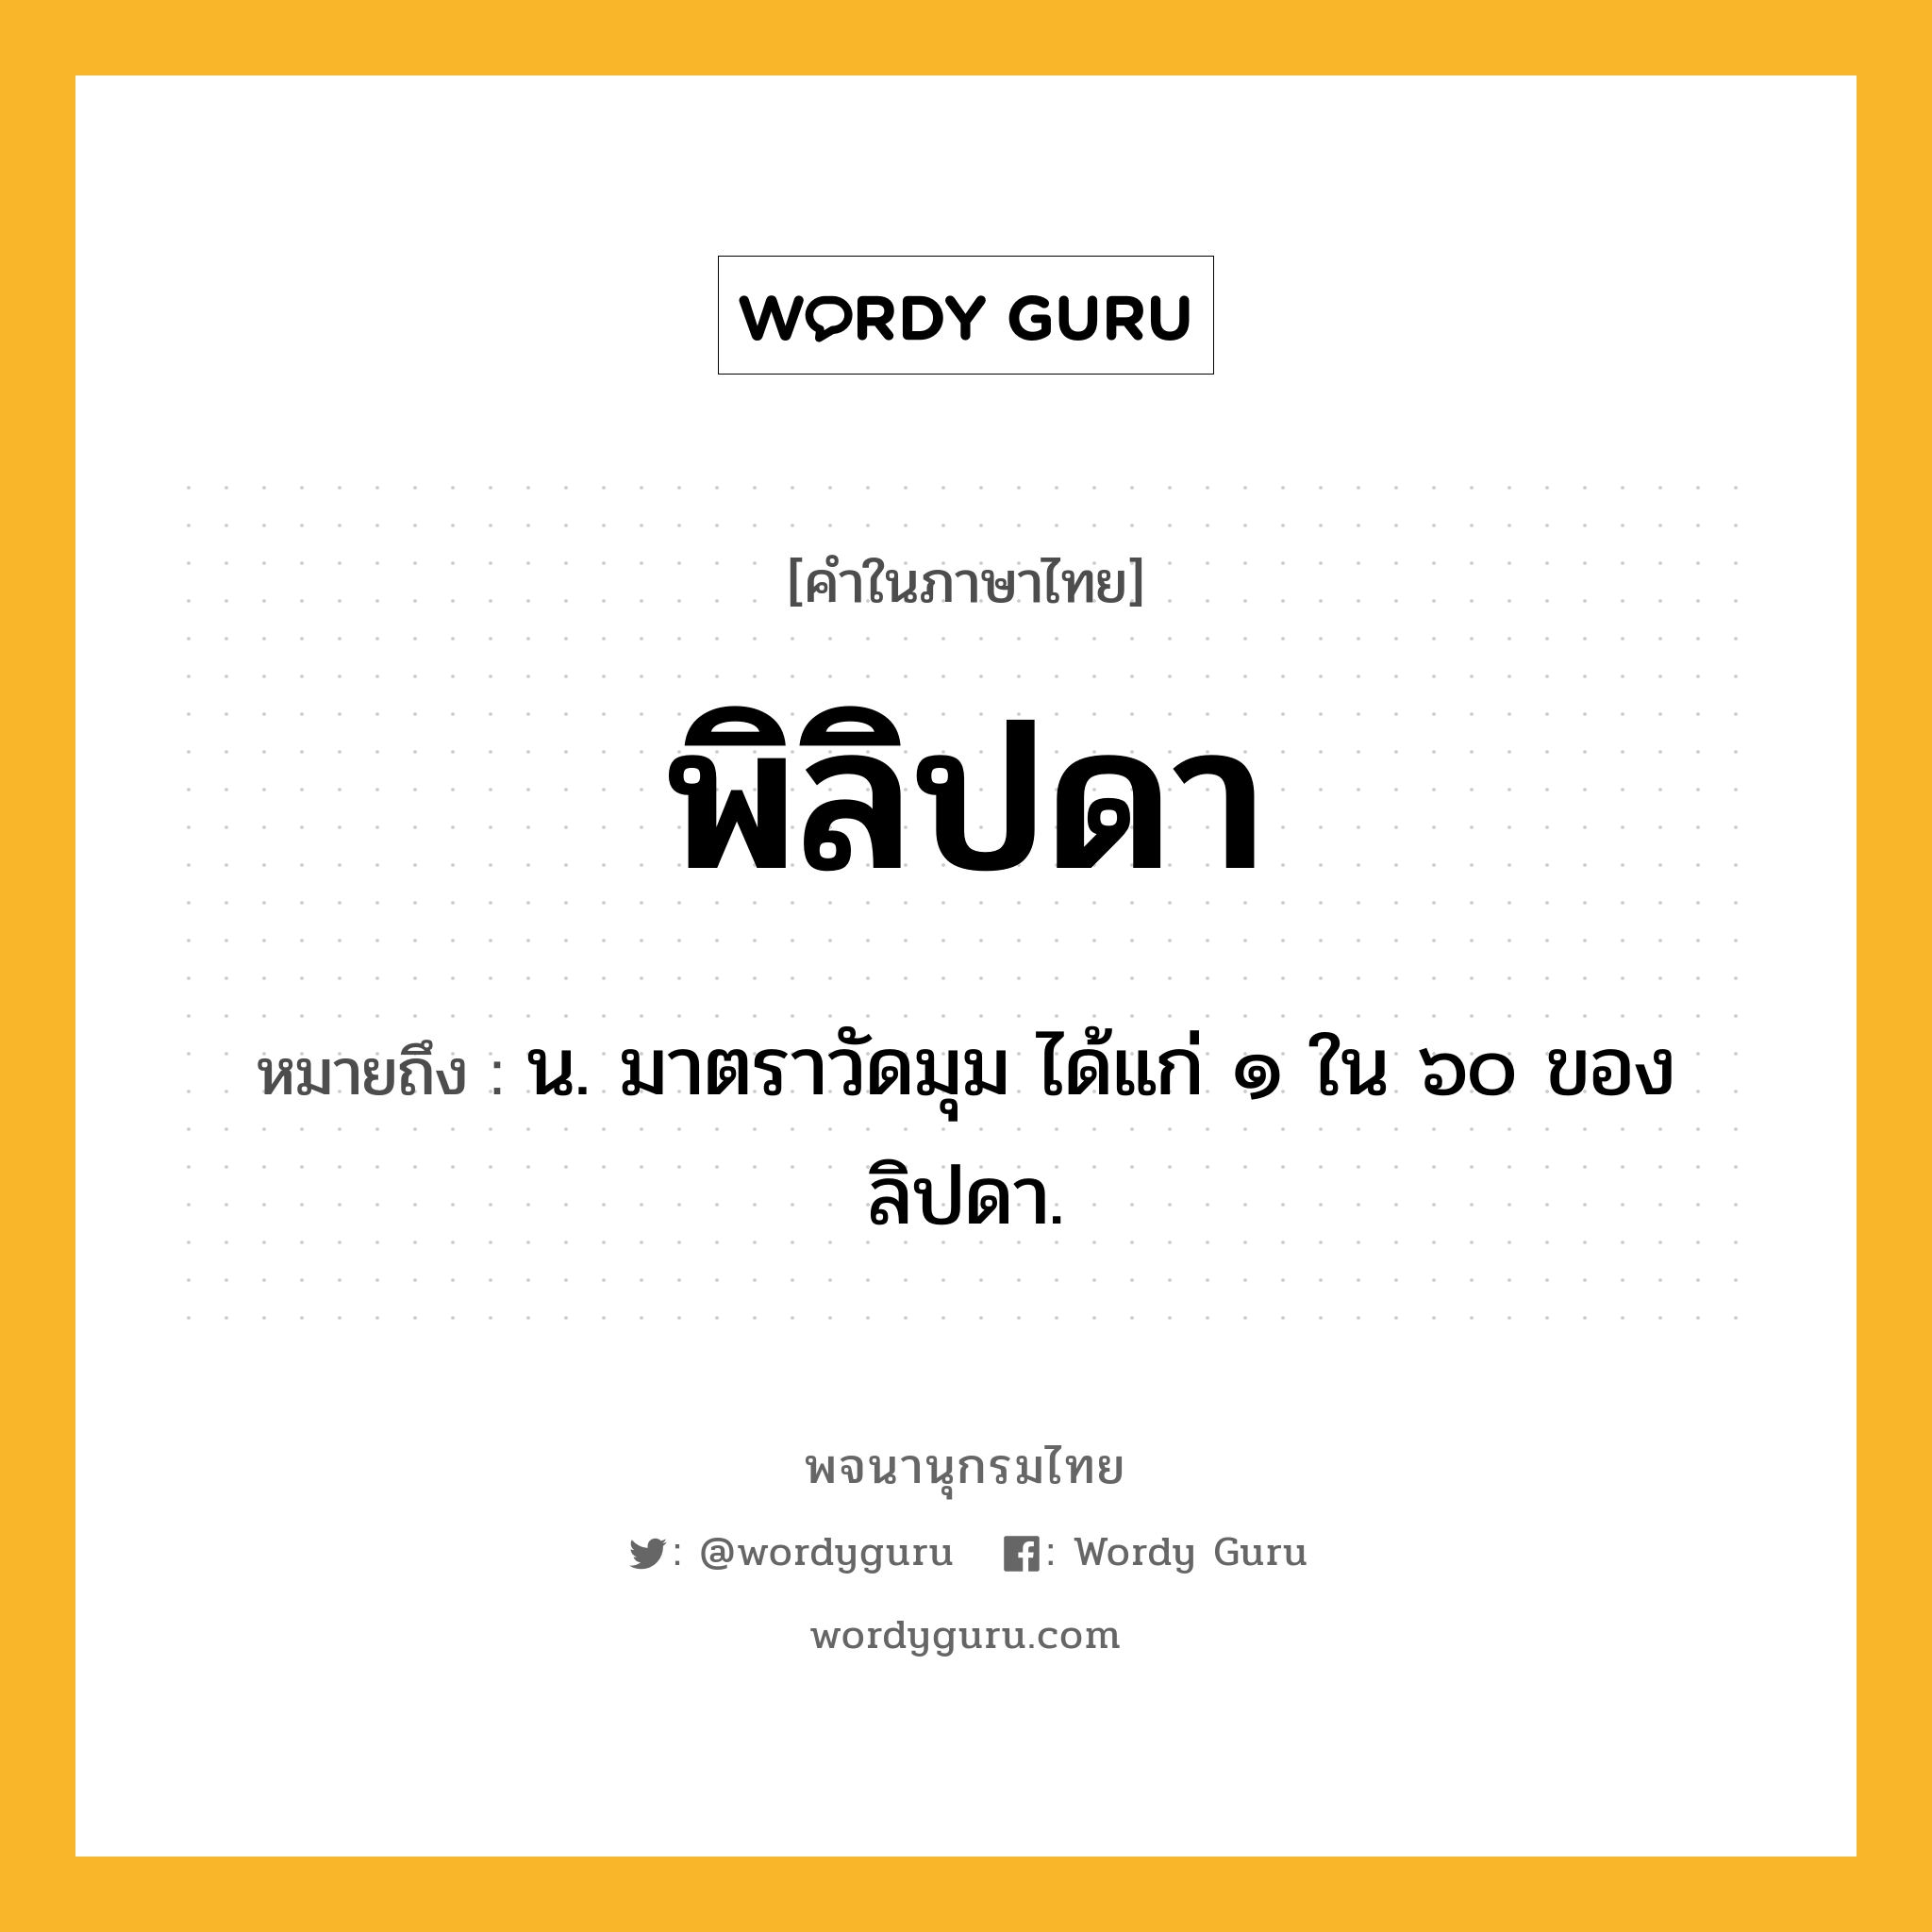 พิลิปดา ความหมาย หมายถึงอะไร?, คำในภาษาไทย พิลิปดา หมายถึง น. มาตราวัดมุม ได้แก่ ๑ ใน ๖๐ ของลิปดา.